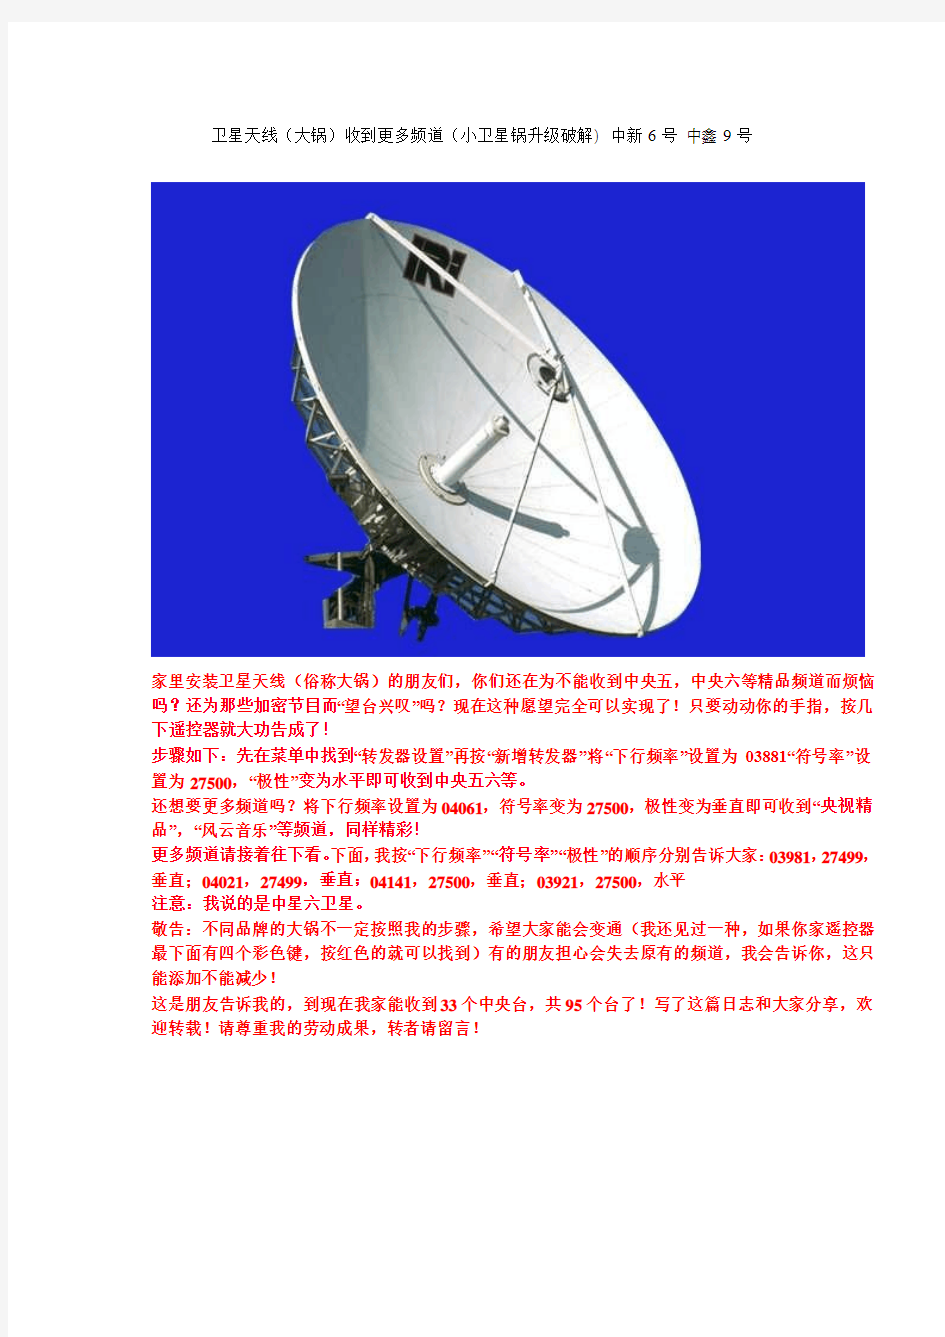 卫星天线(大锅)收到更多频道(小卫星锅升级破解)  中新6号 中鑫9号卫星天线升级破解